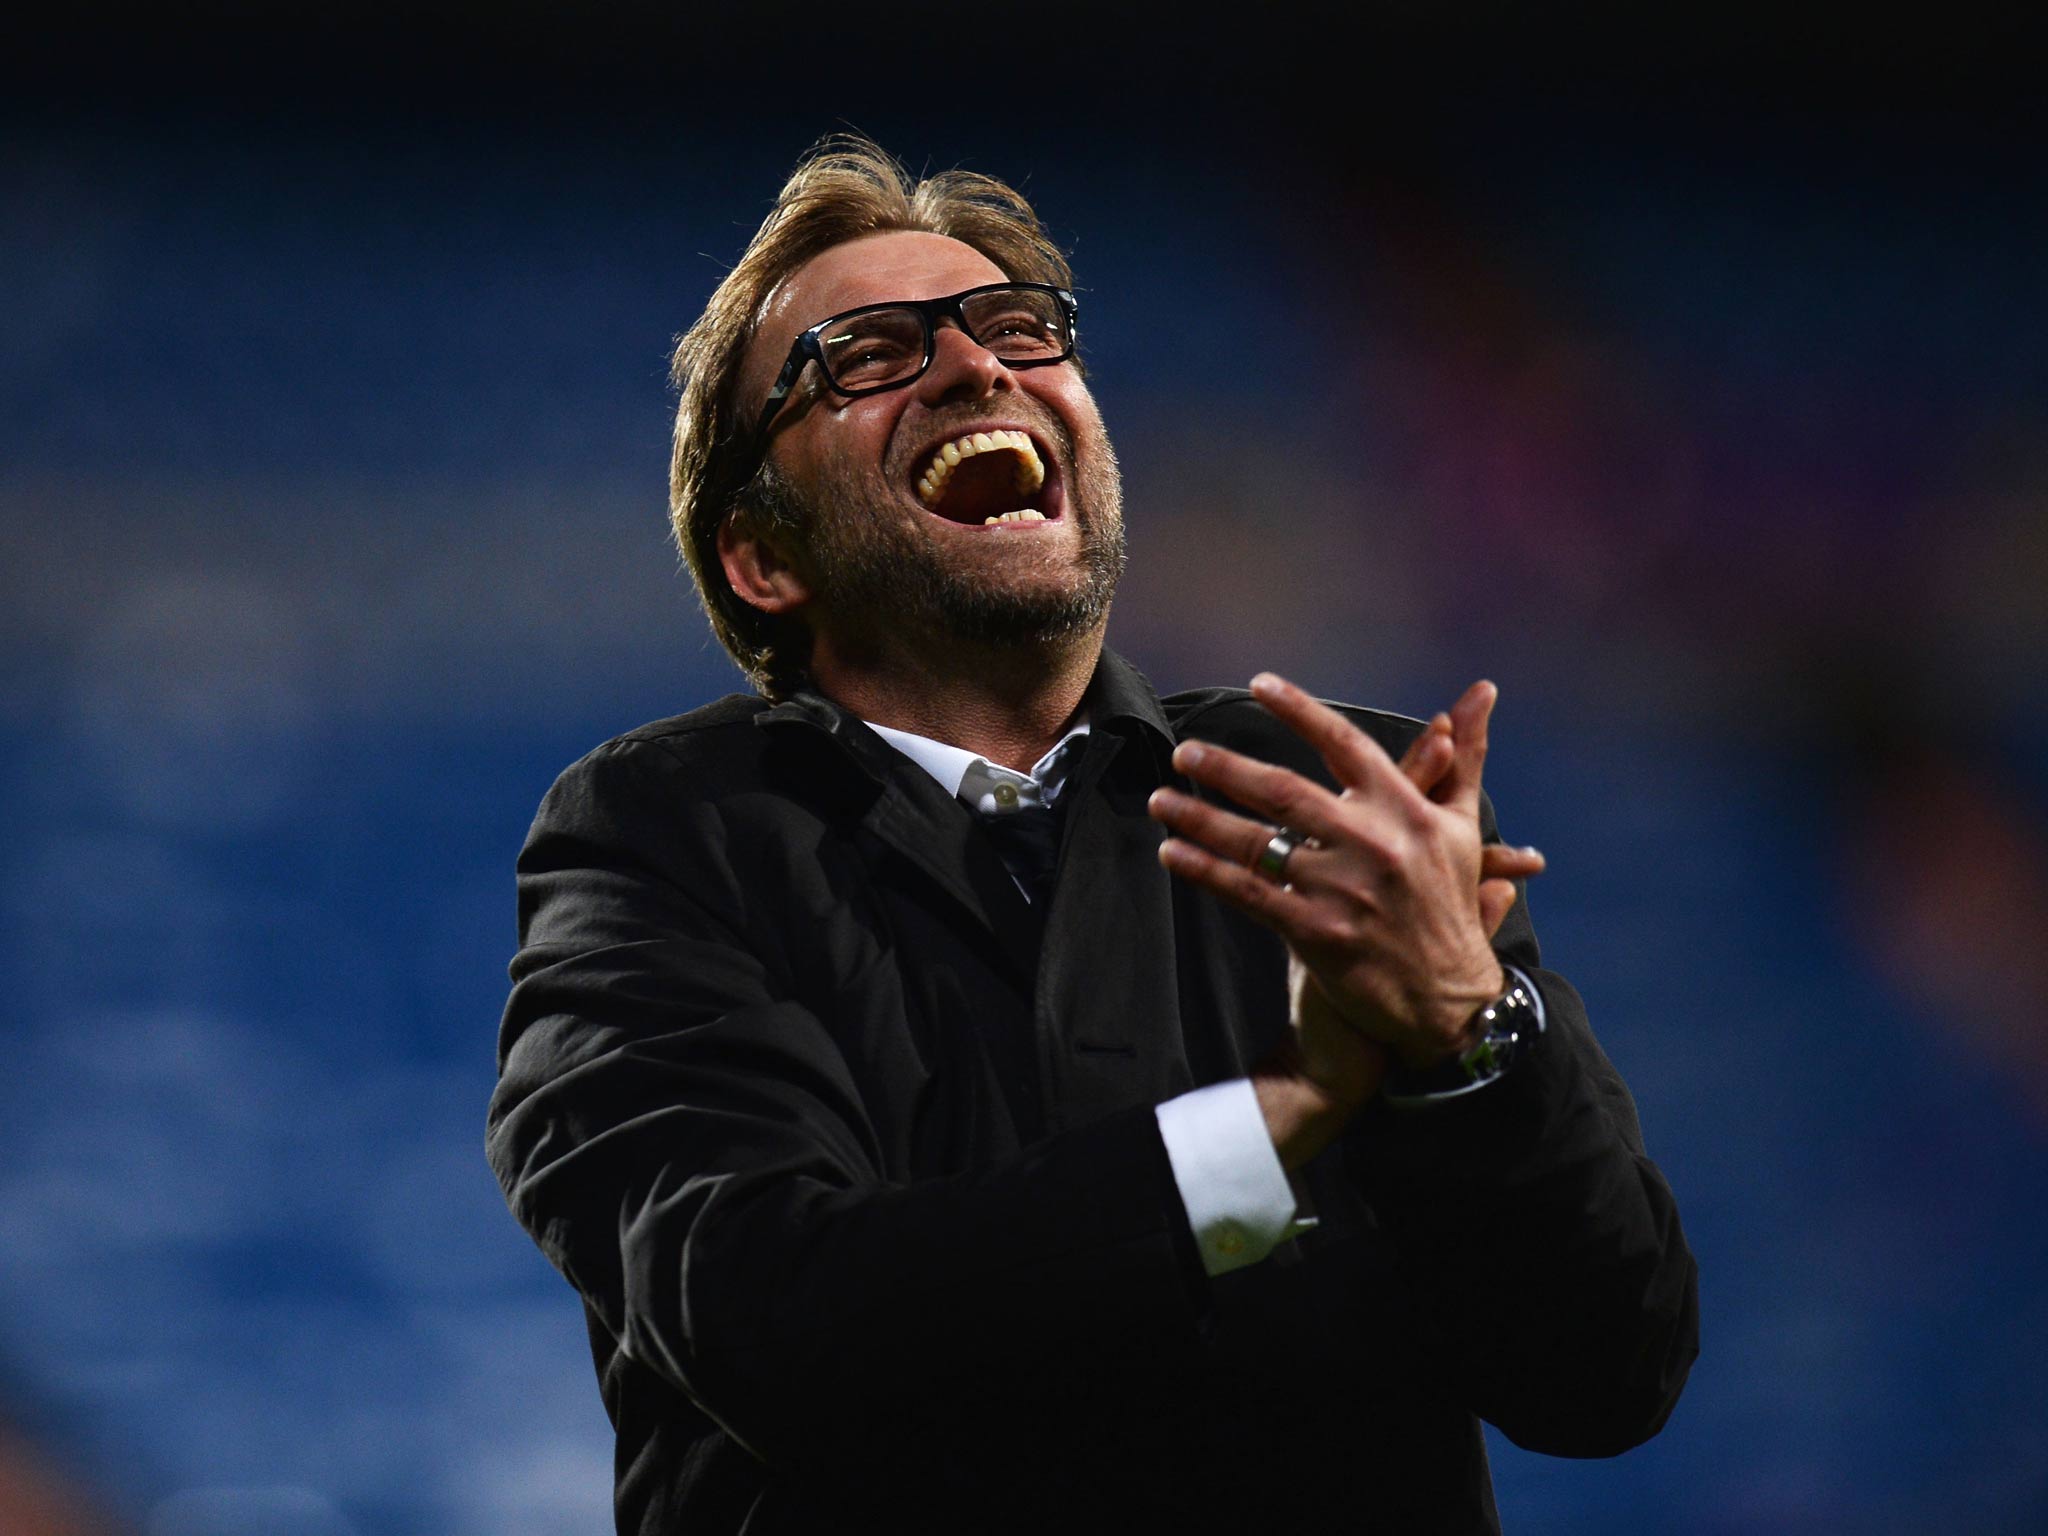 Borussia Dortmund boss Jurgen Klopp celebrates after reaching the Champions League final